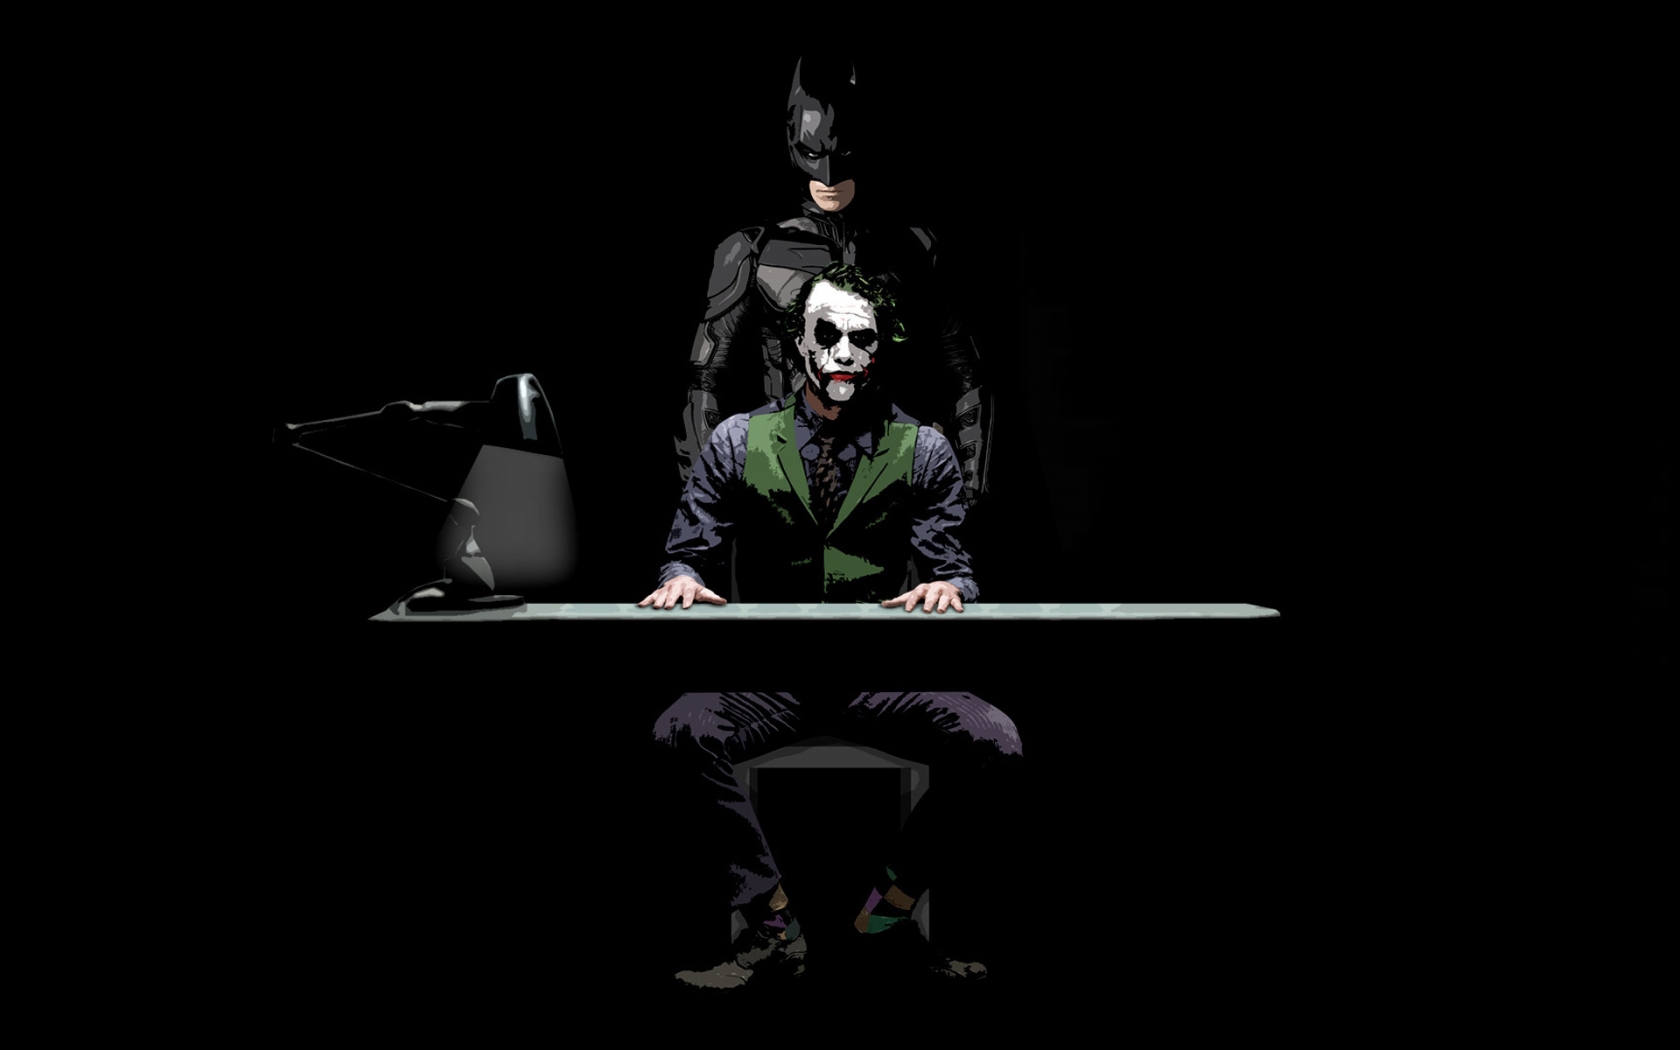 Batman and Joker Sketch for 1680 x 1050 widescreen resolution